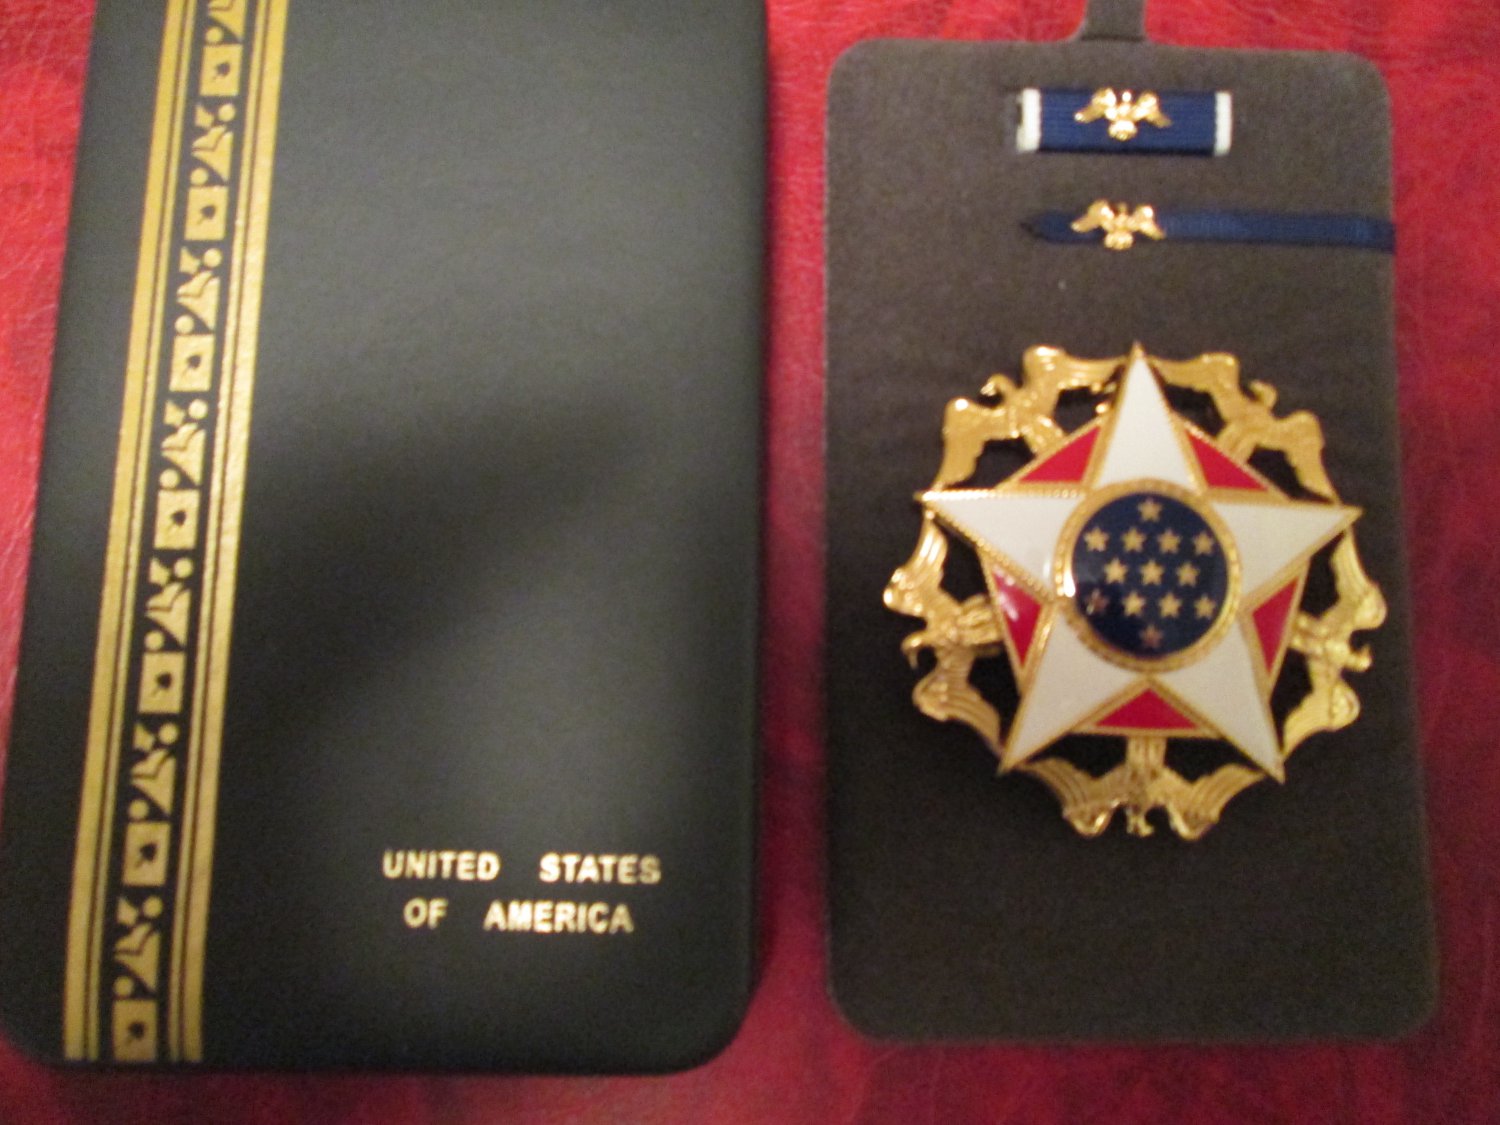 elton john medal of freedom